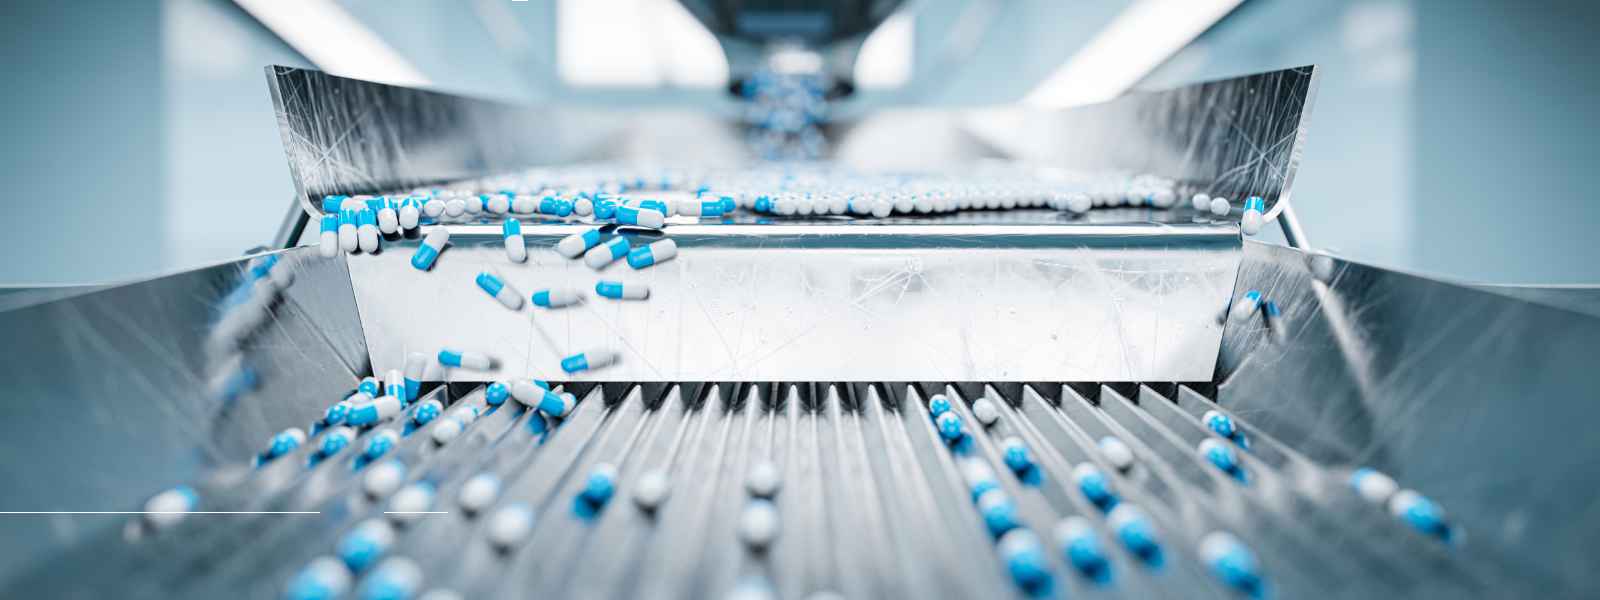 Robotic medicines manufacturing